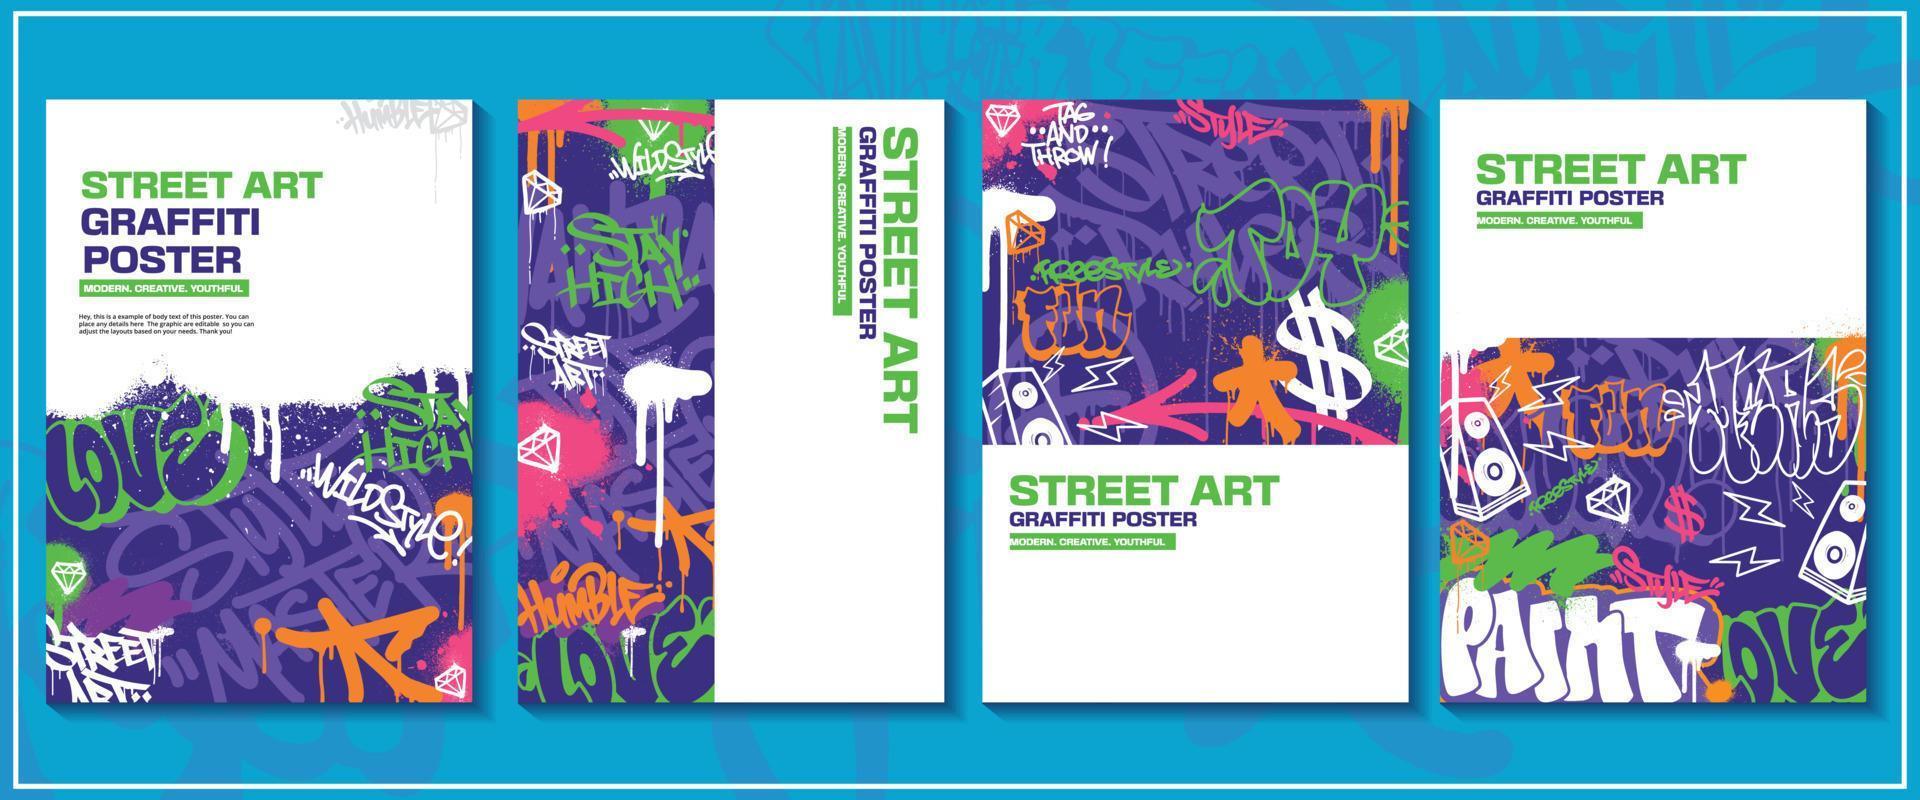 cartaz de arte de graffiti moderno ou design de folheto com etiquetas coloridas, vomitar. vetor de ilustração de grafite abstrato desenhado à mão em tema de arte de rua